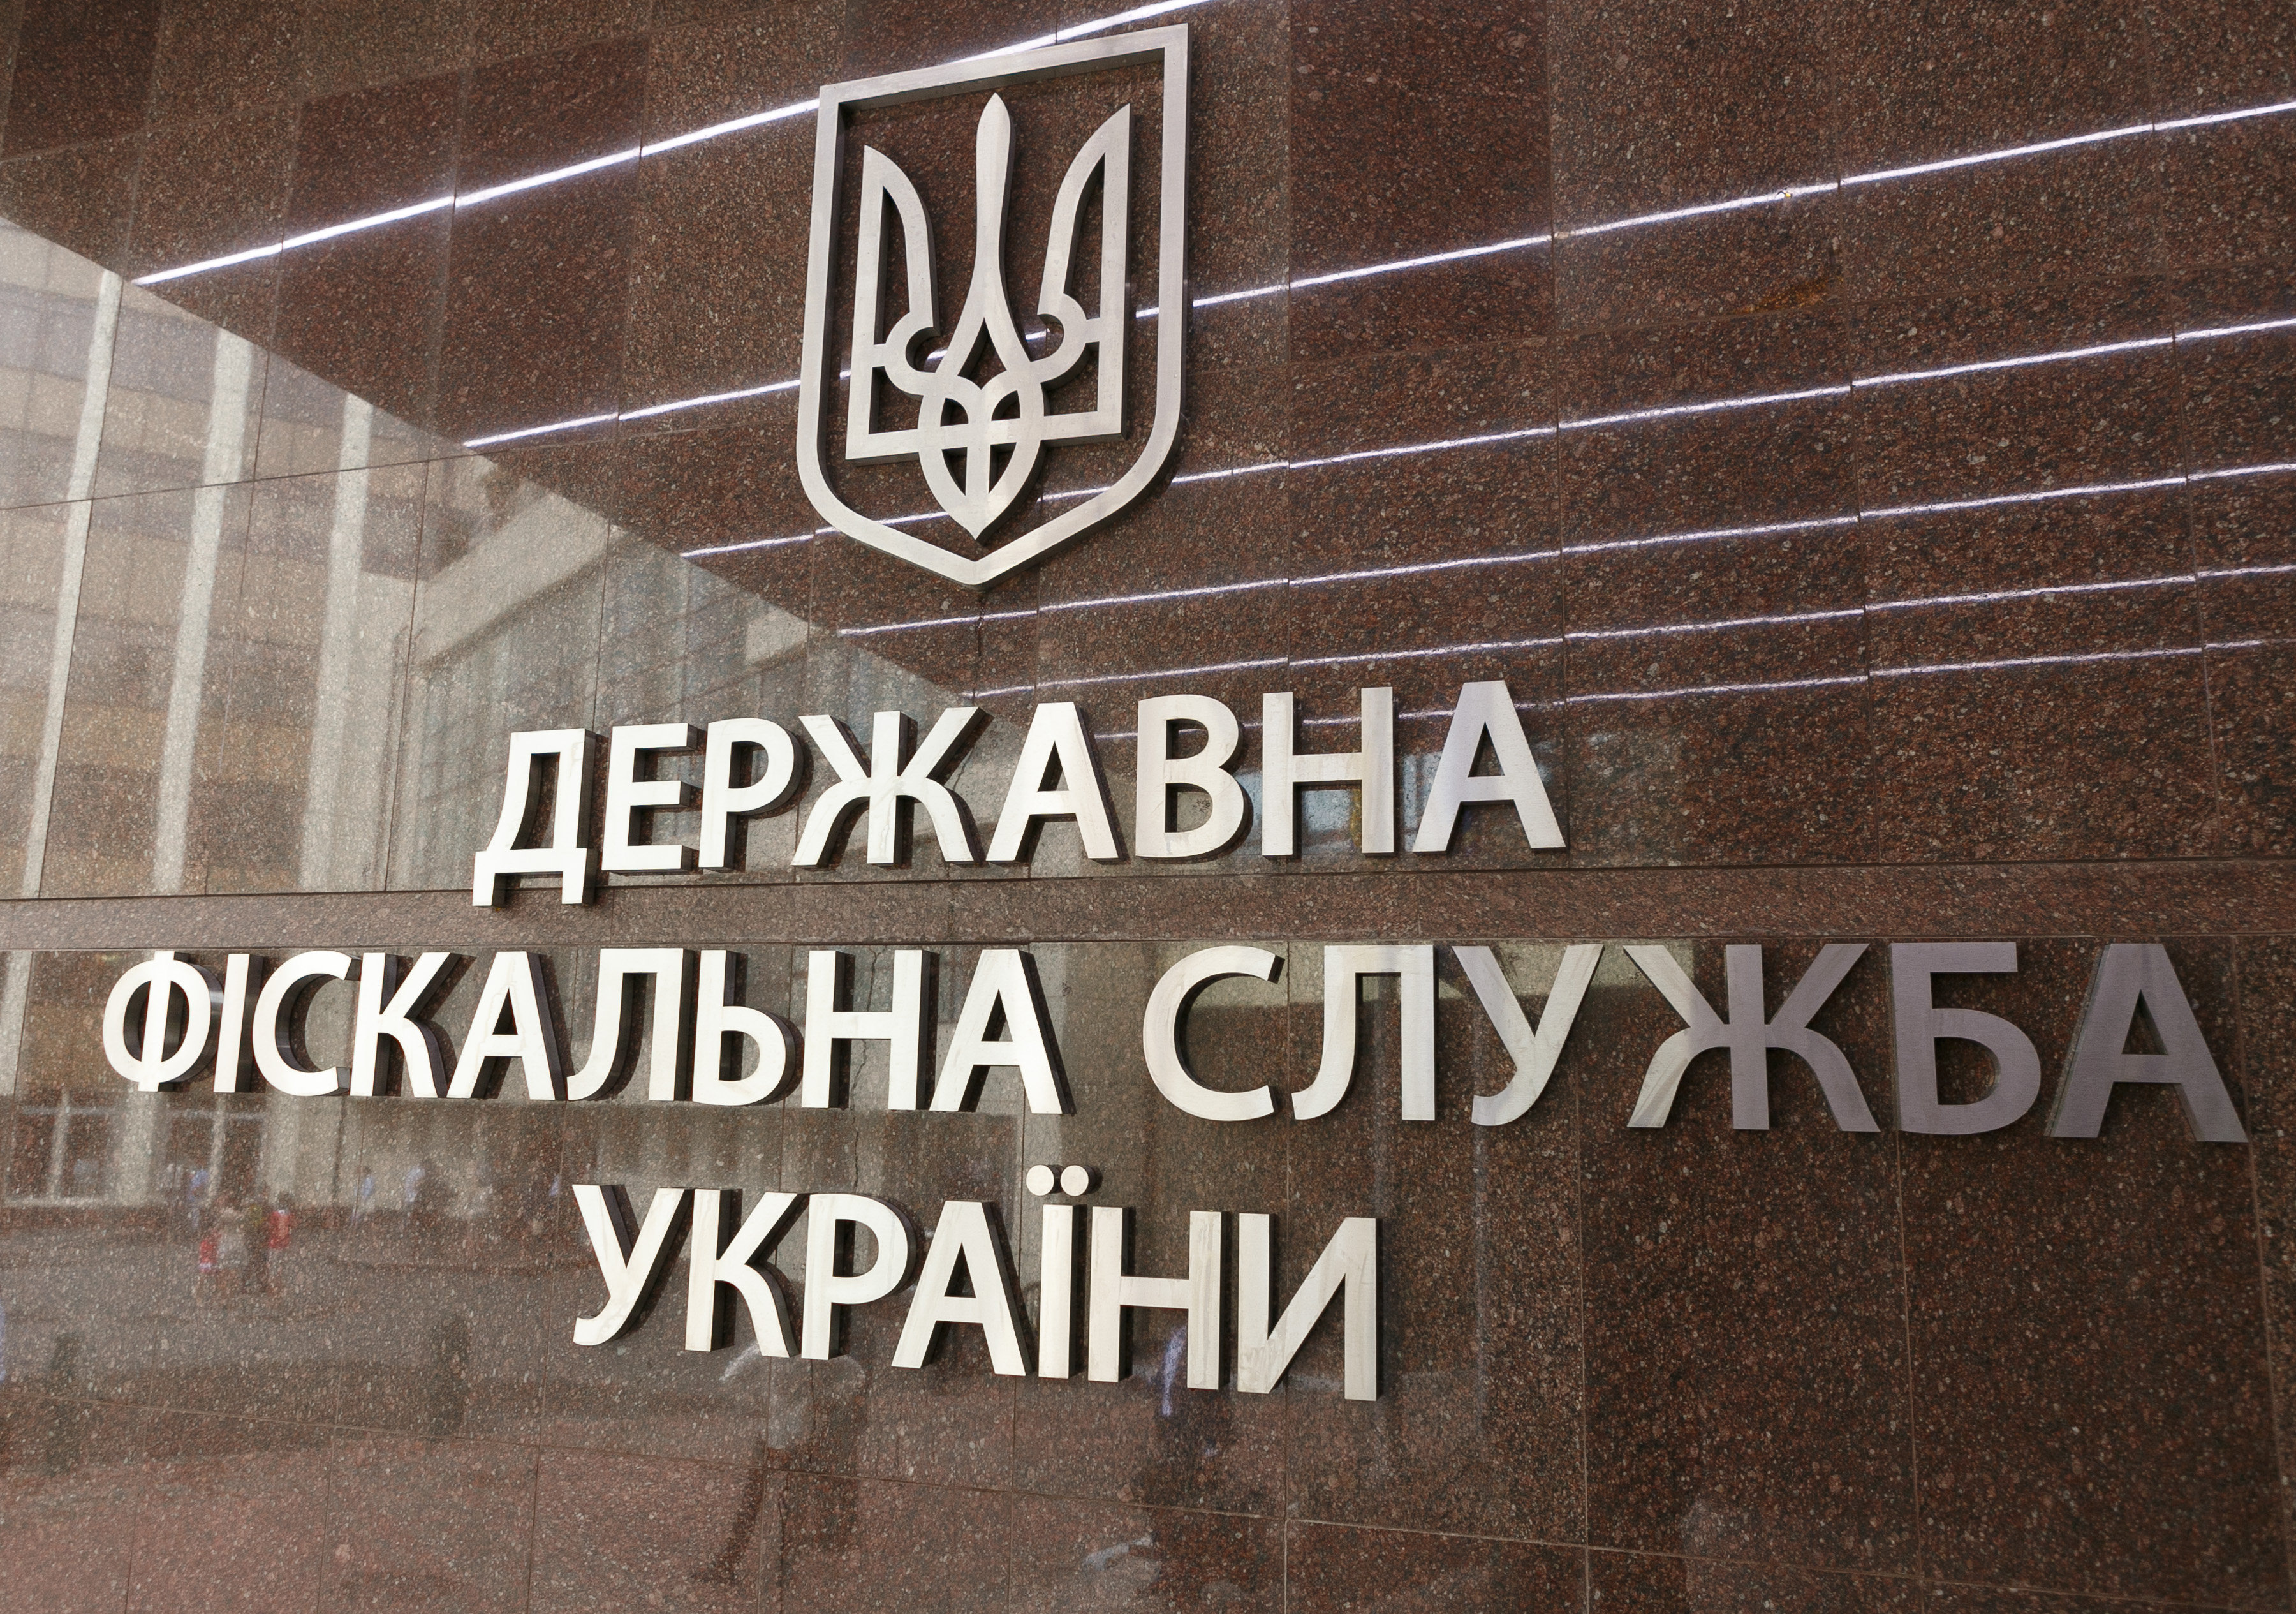 Налоговику грозит срок за ущерб Госбюджету на 12 млн грн